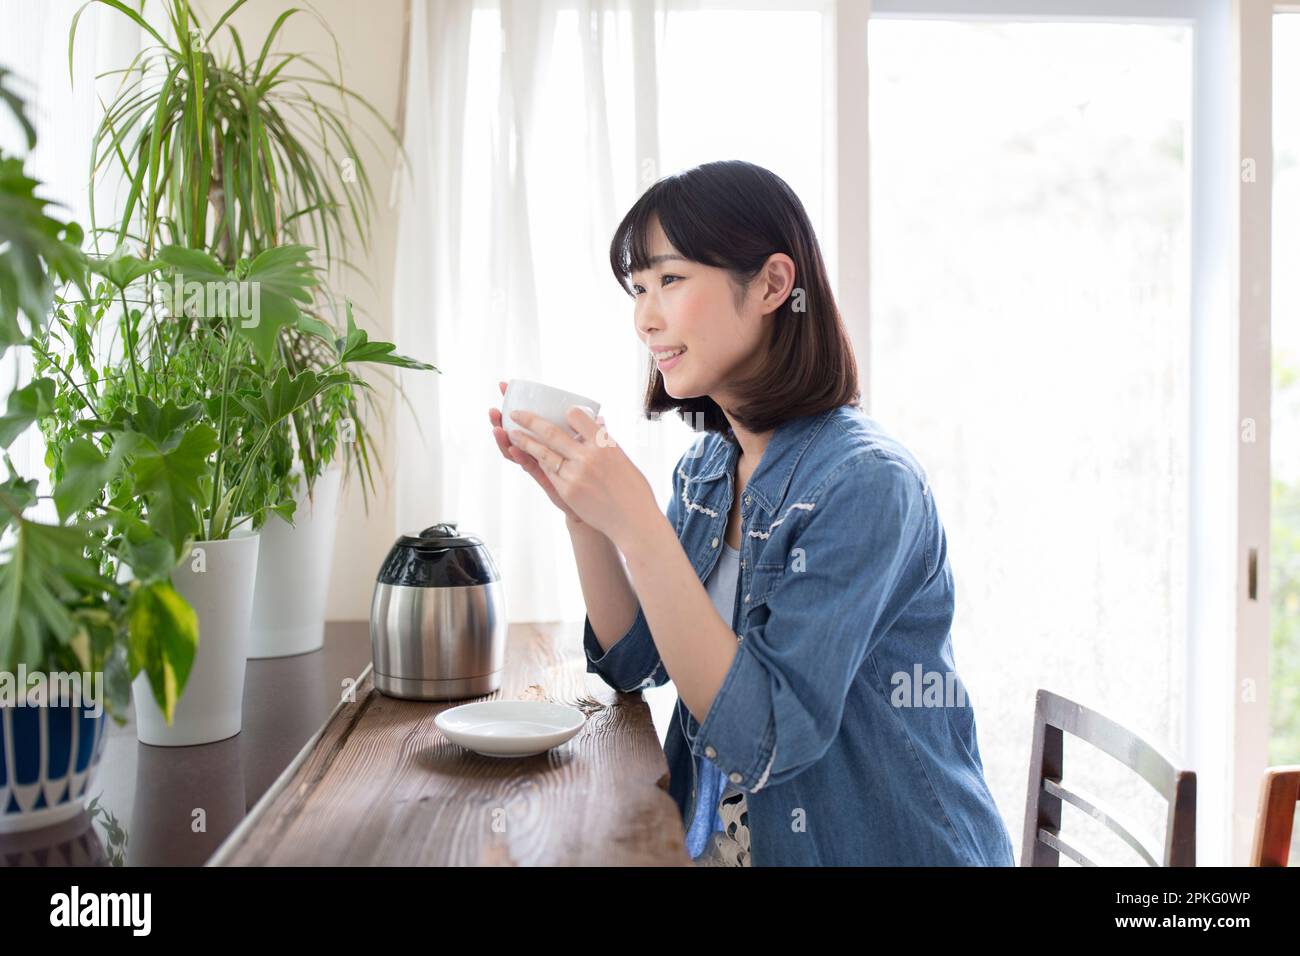 Frau entspannt sich mit Kaffee, während sie sich Zimmerpflanzen ansieht Stockfoto